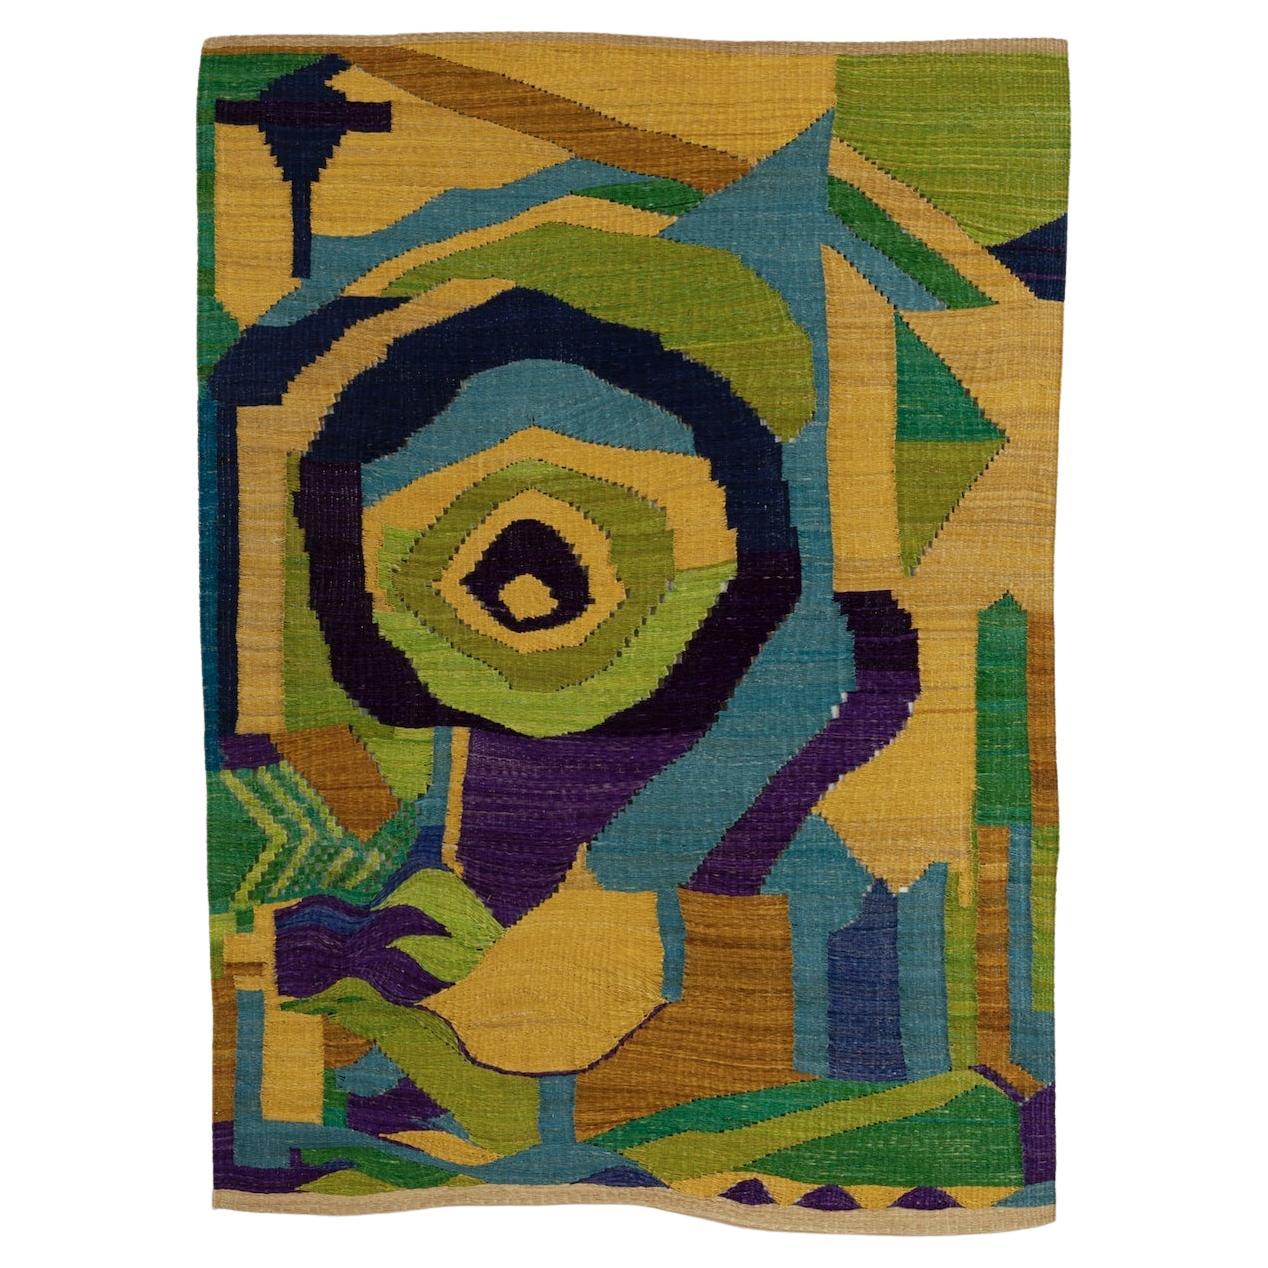 Wandteppich, handgewebt in Palme mit kühnem, abstraktem, geometrischem Design